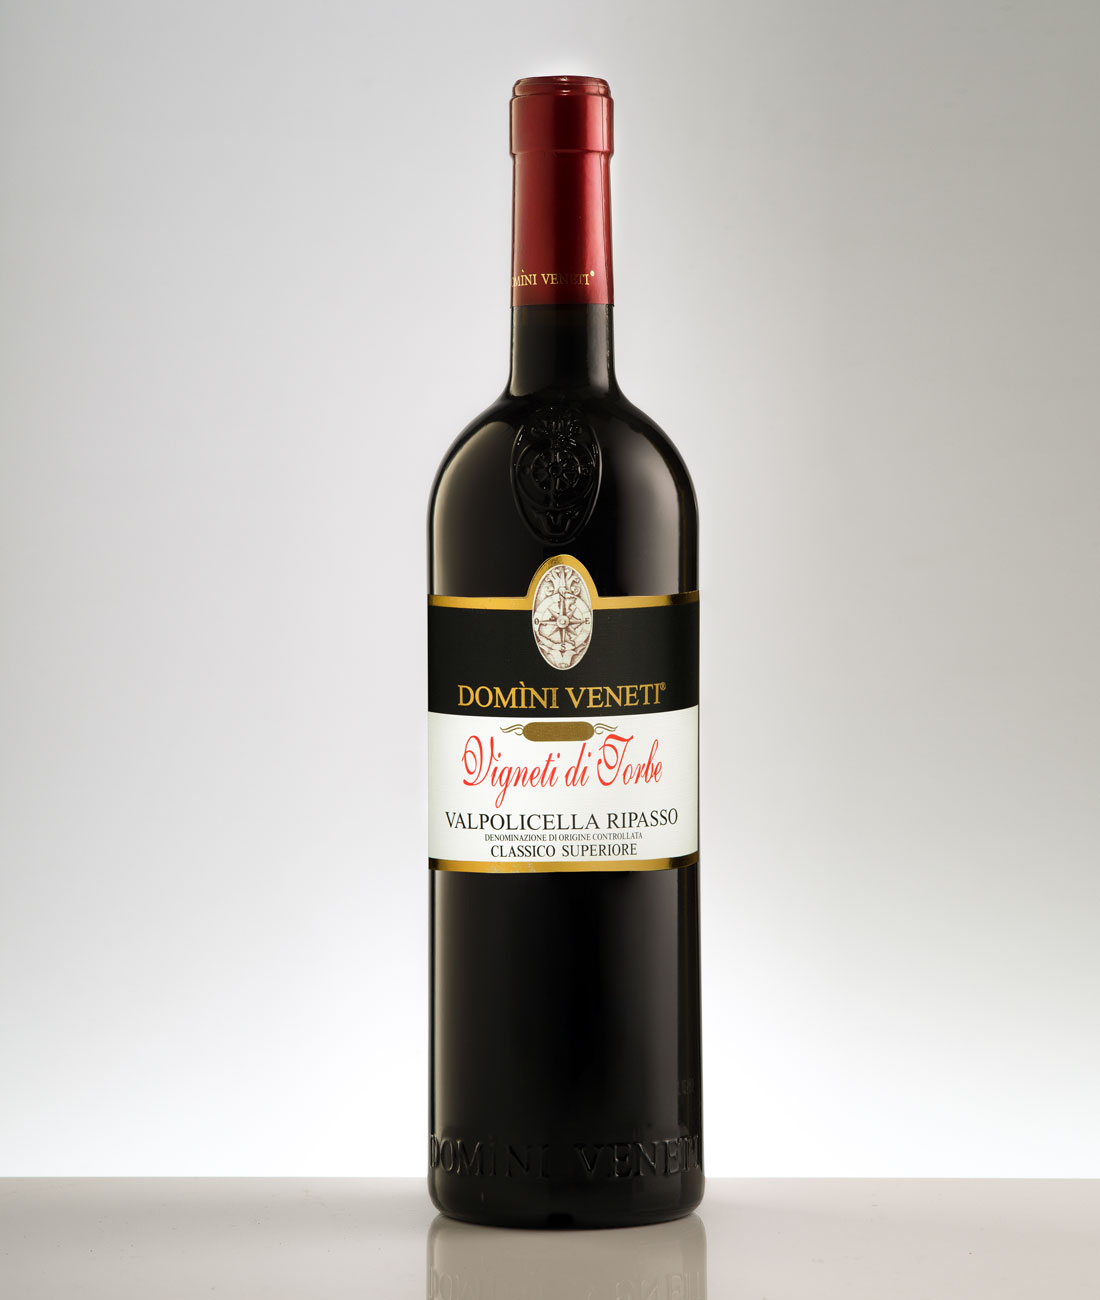 Concorsi enologici. Il miglior Ripasso al Gran Premio Internazionale del vino Mundus Vini è "La Casetta" Domìni Veneti - 11